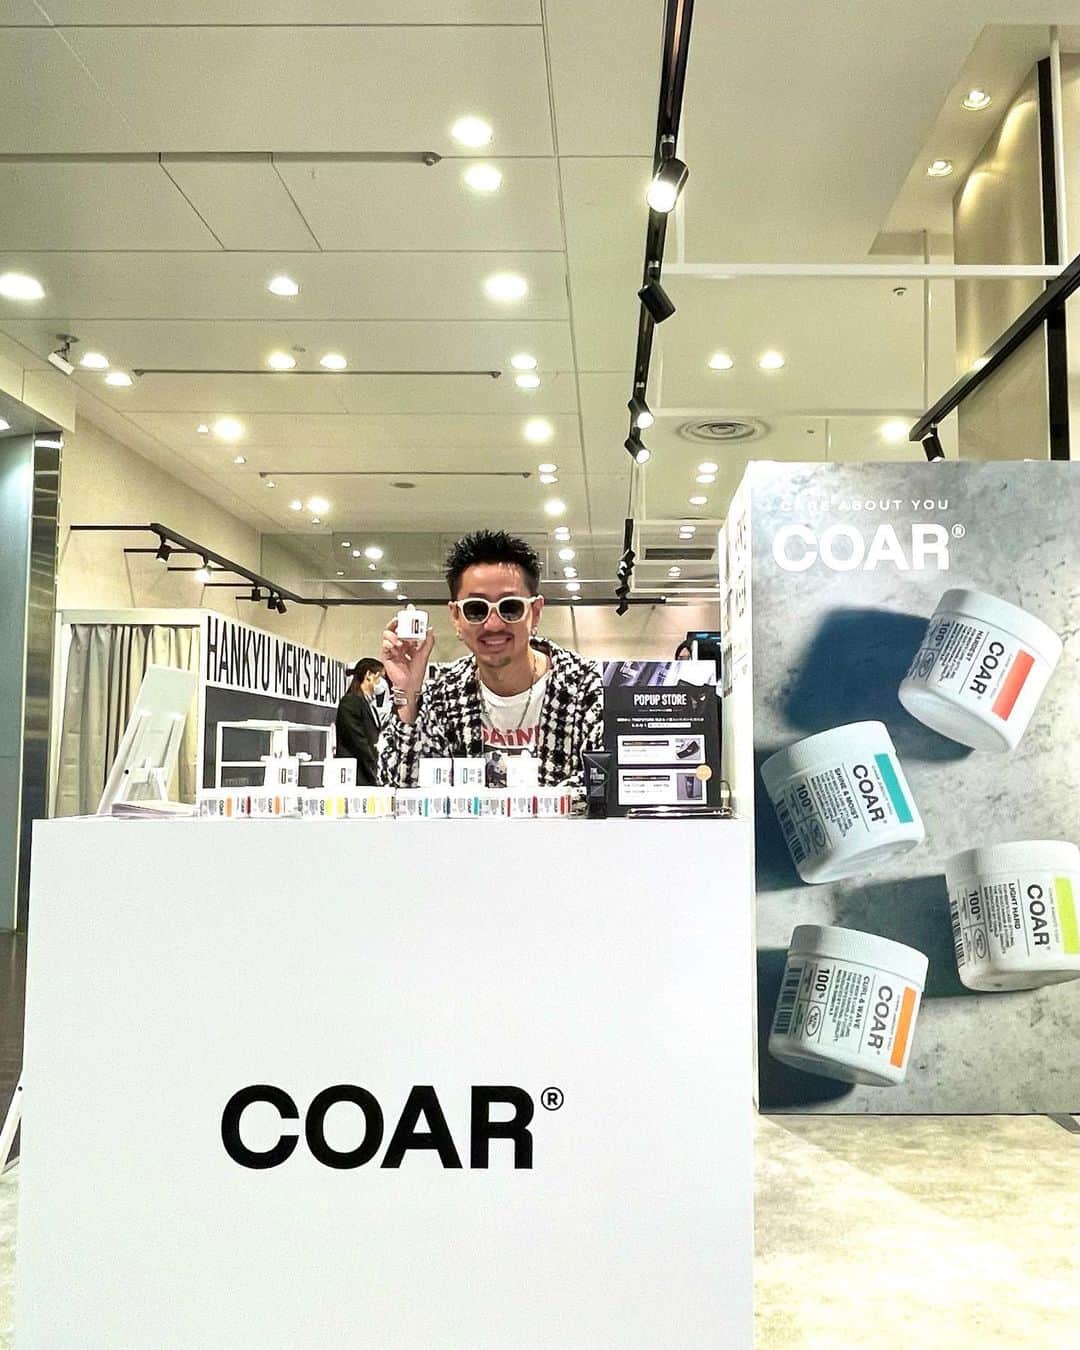 中村トメ吉のインスタグラム：「【COAR】 @coar_jp  のポップアップストアを @thefuturecare  様と共に 伝説の阪急梅田メンズ館（大阪）で5/16（火）までやらせていただいております‼️ 足を運んで下さった皆様、商品購入して下さった皆様、本当にありがとうございます😊 そしてこの様な機会をいただき本当にありがとうございます🙇‍♂️ ⁡ 8ヶ月前に「COAR」というブランドを立ち上げ、 北海道から沖縄まで全国各地たくさんの美容室様に取り扱っていただき心から感謝しております。 ⁡ 「COAR」は あなたの新しい体験に向けて、 あなたのなりたい自分に向けて、 ブレない自分へ自由に旅立つ為の 【チケット】 がコンセプトとなっております。 ⁡ よく見ると航空券がデザインになっています👀 ⁡ 現在COARは 美容室専売とさせていただいてる為、 取り扱いのある美容室でしか購入することが出来ません。 ⁡ なぜその様な戦略をとったかというと、 現代は様々なSNSプロモーション（情報） に溢れ、消費者に対して迷いや疑いを生んでしまっている状況です。 僕らはブランドのストーリーや ファクト（事実）、ベネフィット（効果） を明確に伝え、 お客様から絶対的な信用と信頼を得る事が大切だと考えます。 ⁡ 例えるなら、 SNS広告を回してオンライン販売で拡大したり、 10万人フォロワーのインフルエンサーの方に発信いただくより、 信頼関係で繋がる100人のお客様のいる 美容師様1000人にお伝えいただいた方が この時代のお客様にとっての 信頼と価値になると確信しているからです。 ⁡ そして お客様の手に届くまでにリソースを使うより、 お客様が手に取った後にリソースを使い、 意味を持たせたい。 COARというチケットを通して、 美容師様、お客様の 自己実現に貢献したいと考えております。 ⁡ COARを手に取っていただいた美容師様には、使い方の動画や技術マニュアルの提供はもちろんのこと、 リアルセミナーをはじめとした教育コンテンツを通じて技術を学ぶ機会をつくらせて頂き、 さらには、オンラインサロンや練習会、交流会の参加など、お客様同士がつながる機会もつくらせていただいております。 ⁡ 関わる皆様と共創し、アップデートし続け、 お客様が、「これさえあれば間違えない」という ブランドに育てていけたらと思っております。 ⁡ まず日本を代表するメンズヘアケアブランドに。 そしてアジアNo.1のメンズヘアケアブランドへ🔥 ⁡ 関わる皆様のお陰でCOARは存在します。 これからも関わる全ての方々の為に 最大より最高を追い求めて精進してまいりますので宜しくお願い致します🙇‍♂  #GOALD #COAR #阪急うめだ本店  #ポップアップストア  #全ての男性が自己実現出来る世の中を創る  #やはり改めて店頭に並んでるのを見ると嬉しい #しかもよく行く場所に #取り扱って下さるサロン様の為にブランディングしていきます #感謝」